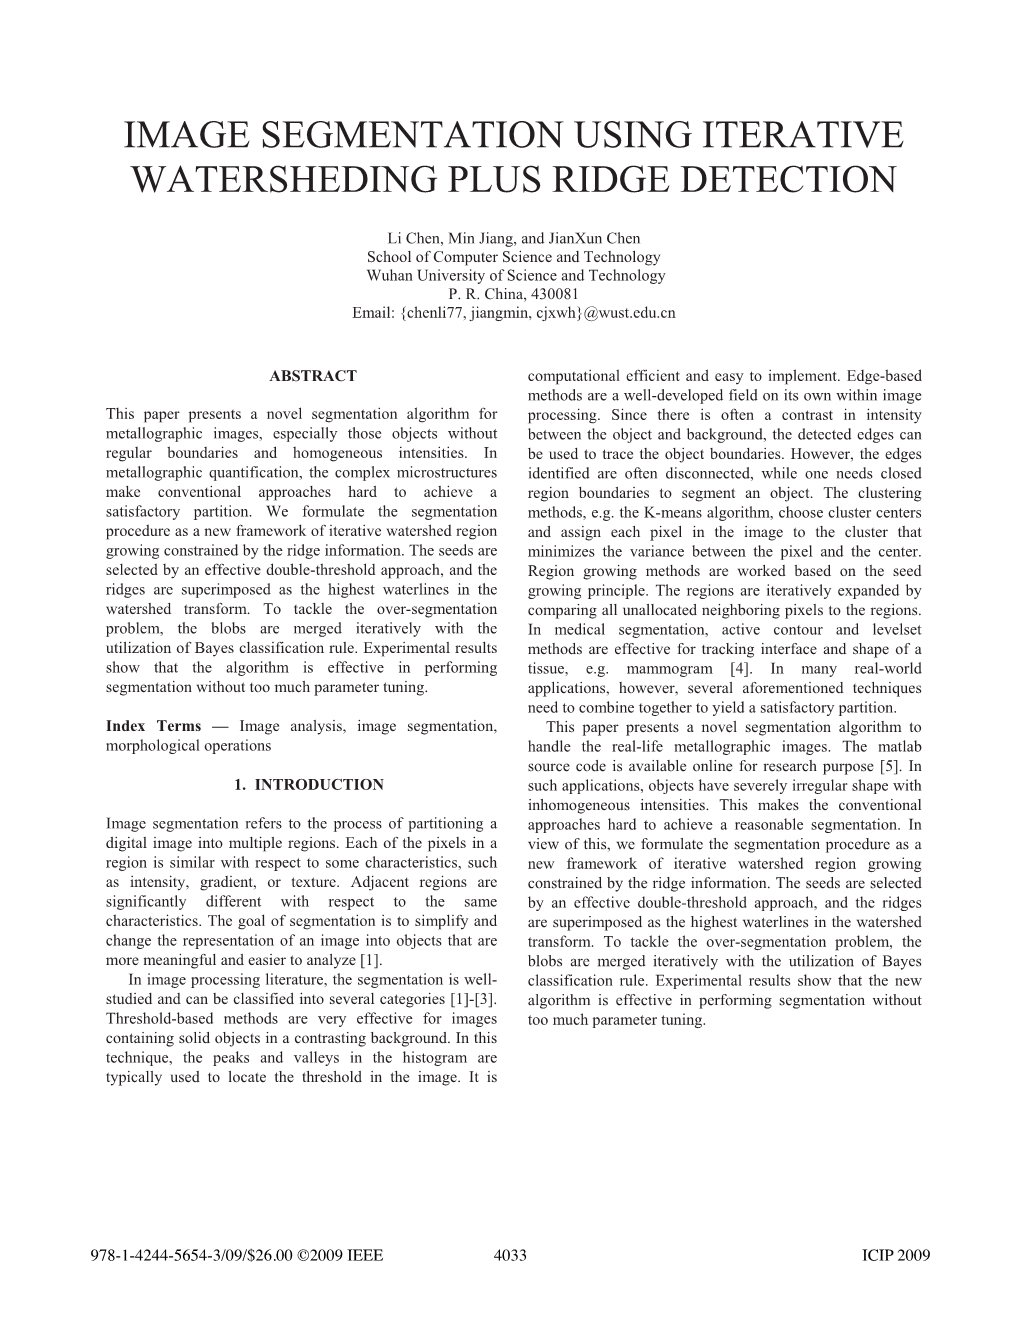 Image Segmentation Using Iterative Watersheding Plus Ridge Detection